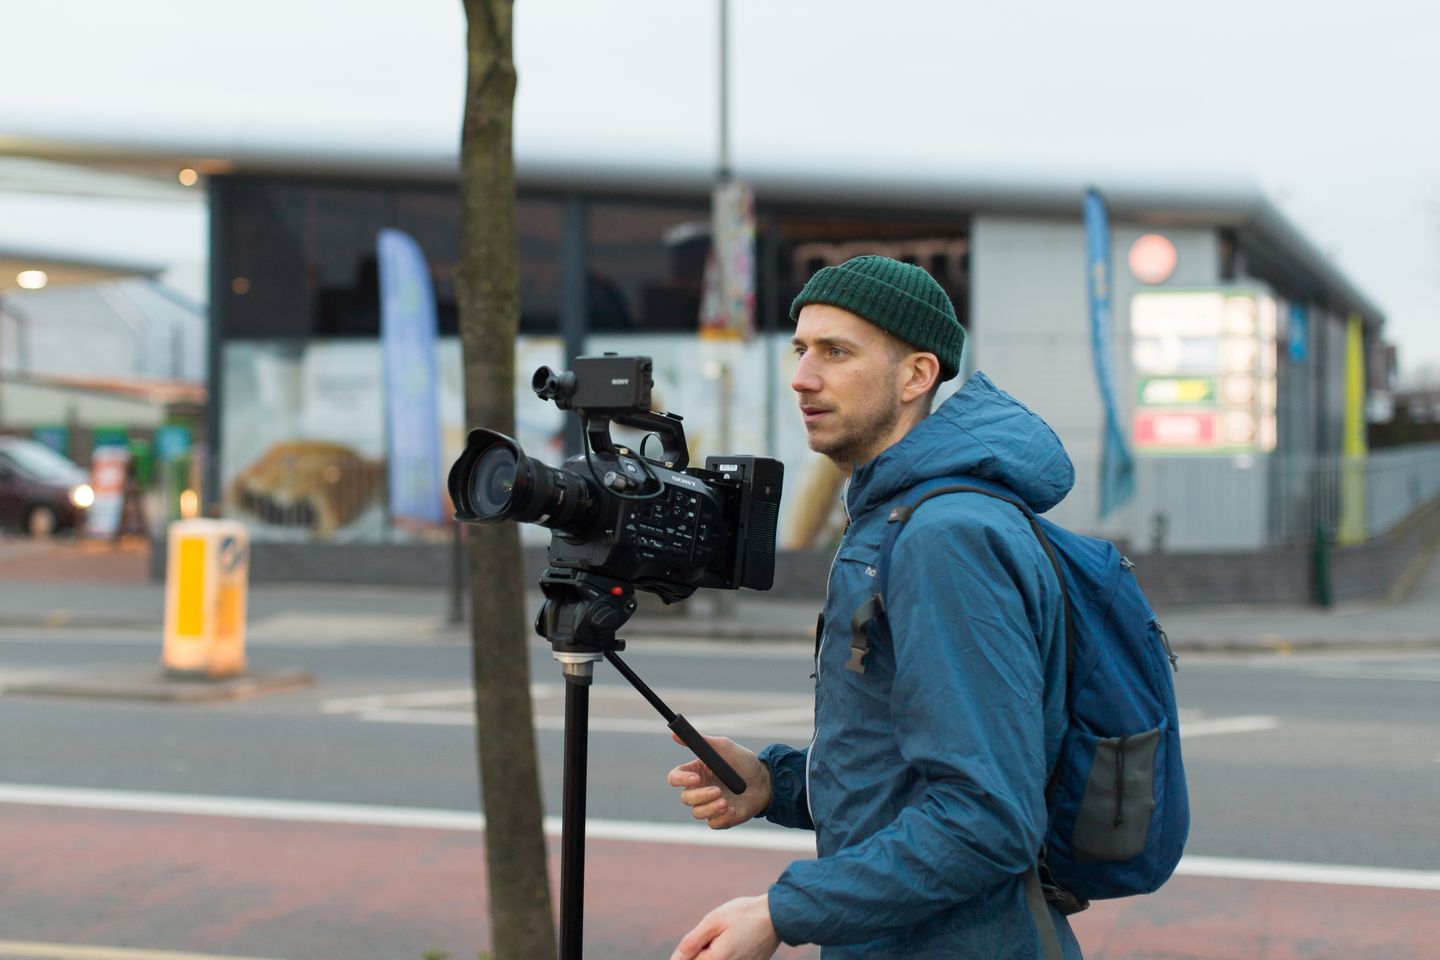 Matt with film camera